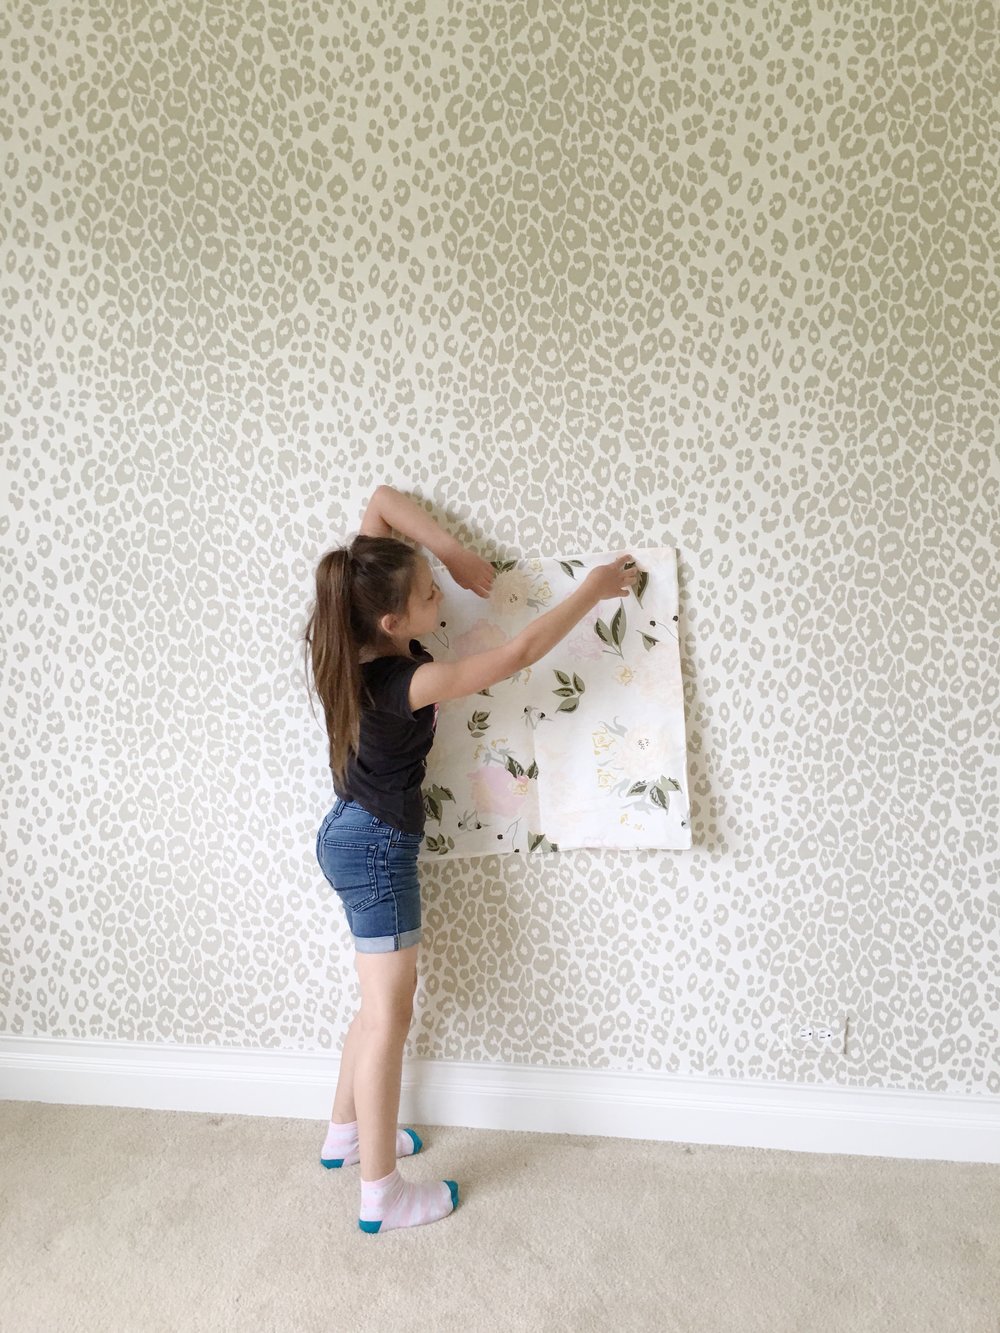 Schumacher Iconic Leopard Wallpaper- Tween Girls Room One Room Challenge | Laura Design Co.